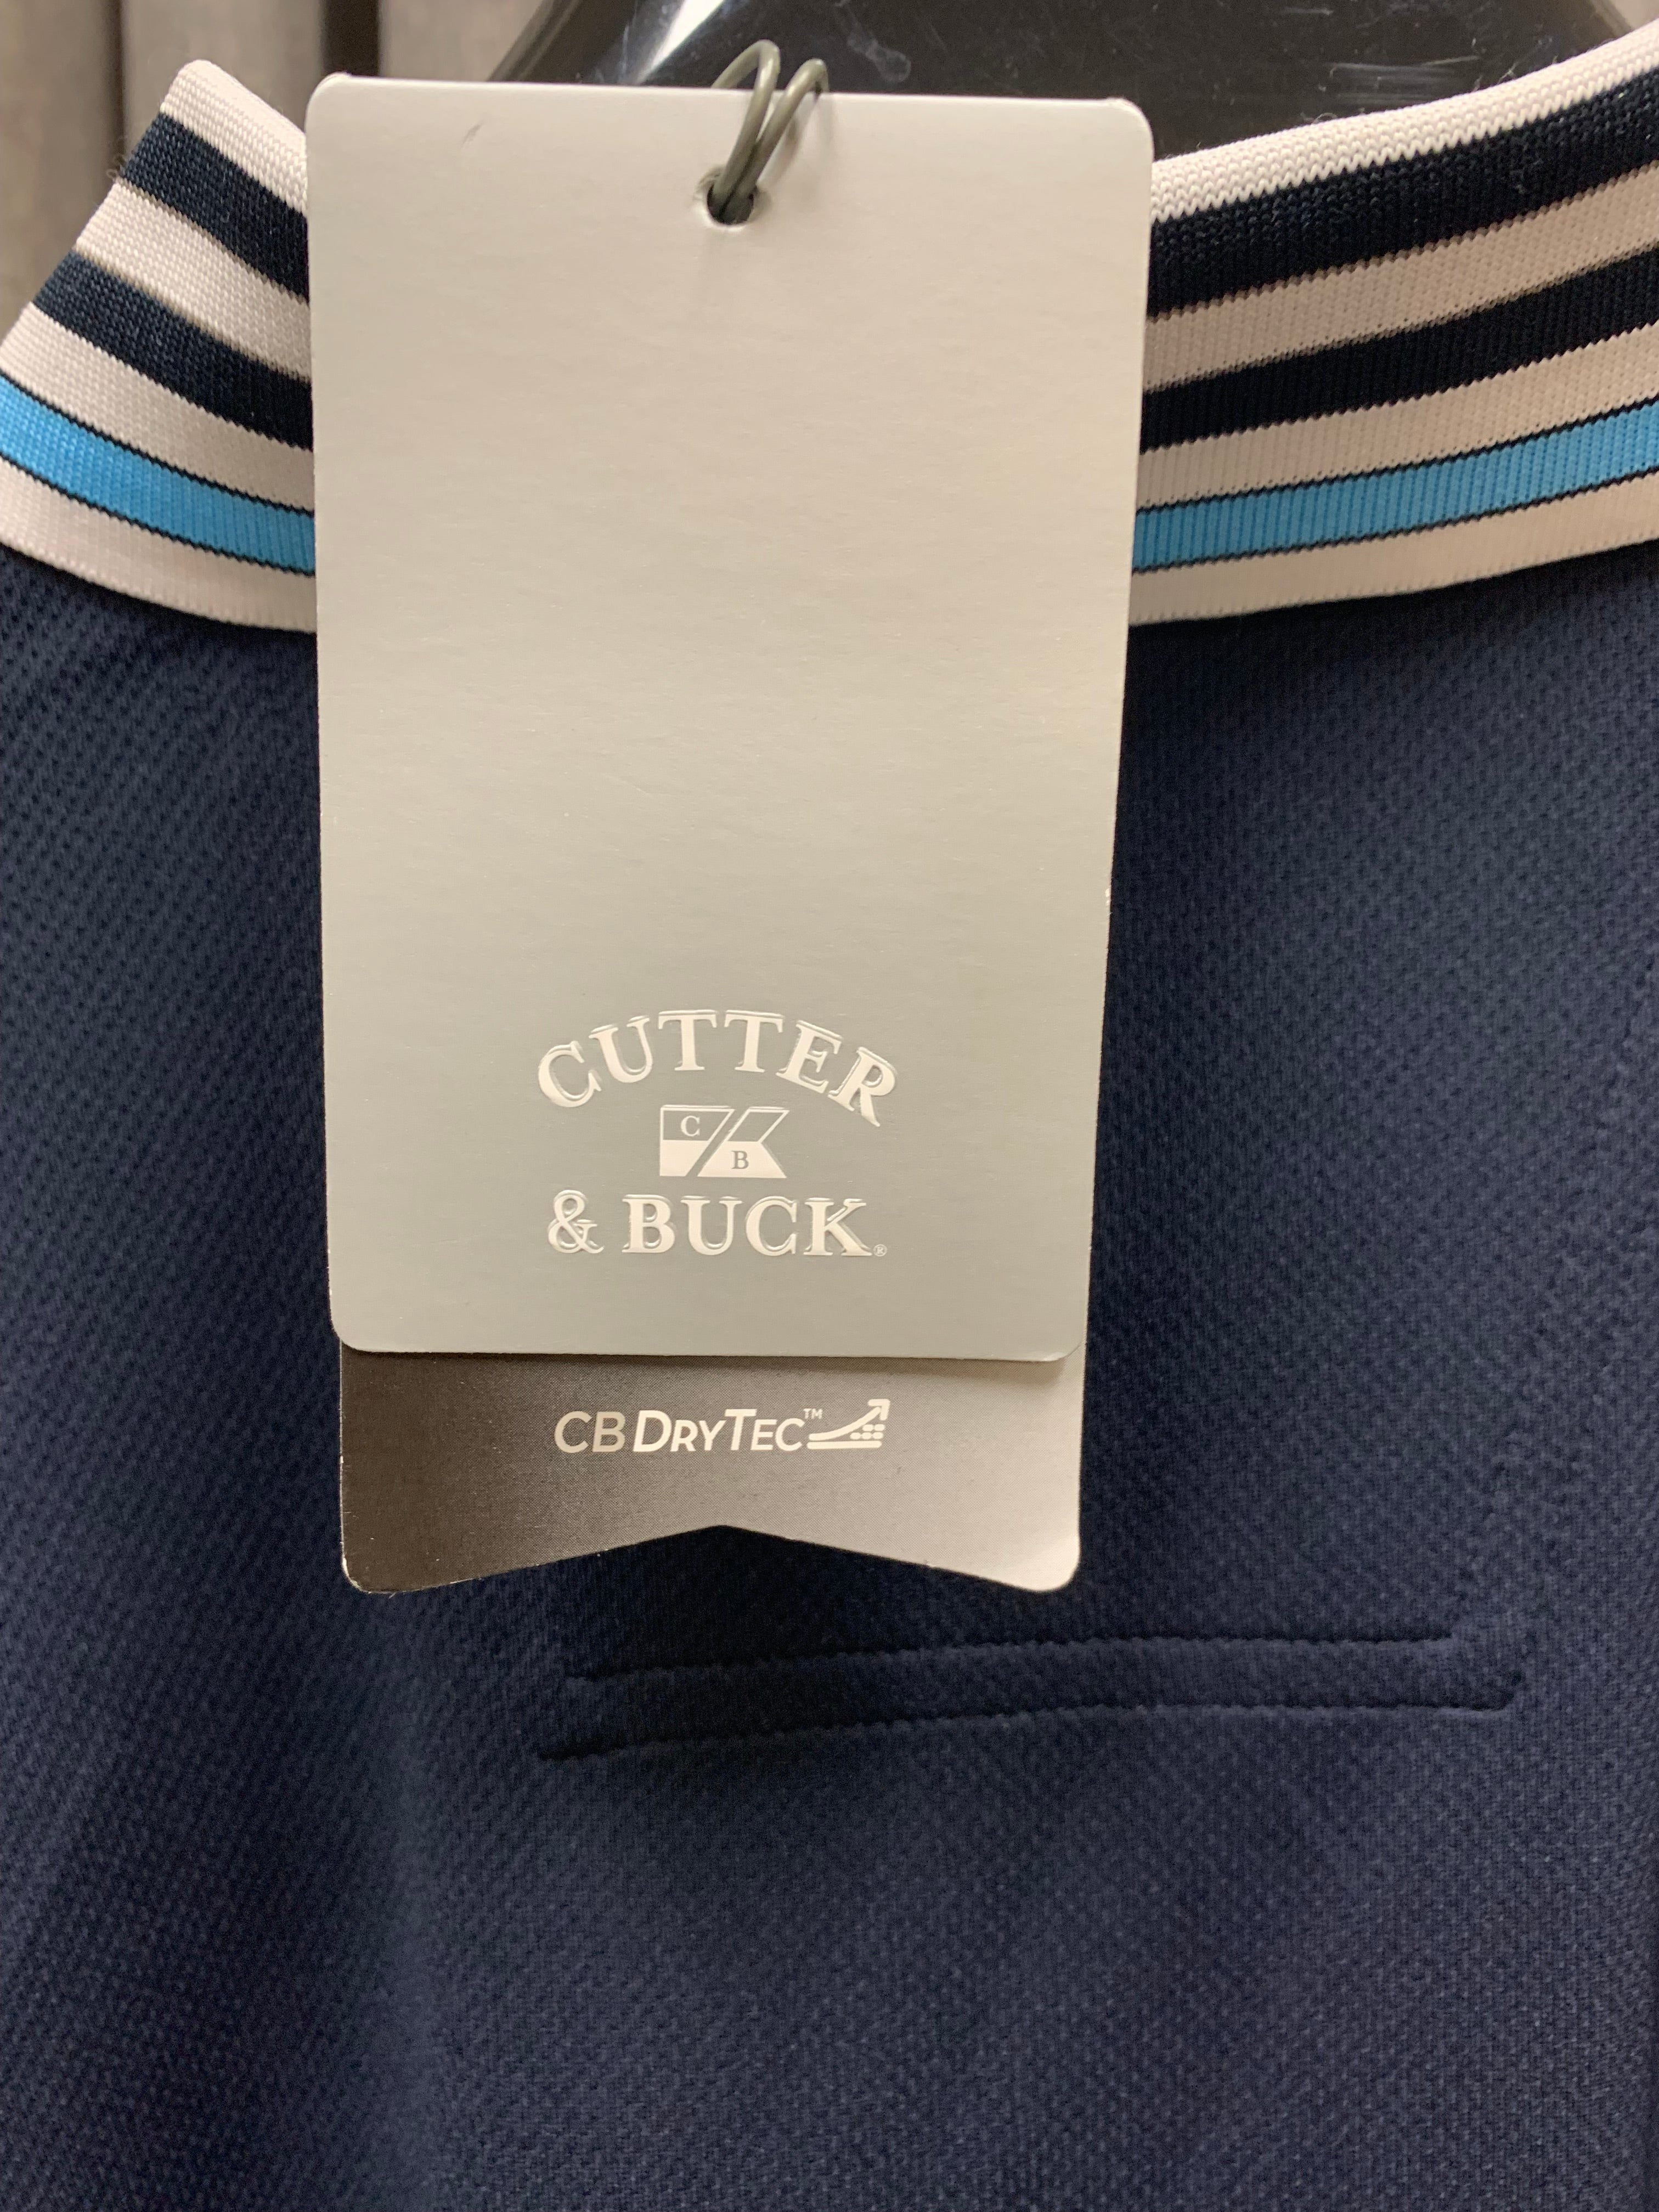 Men's Cutter & Buck Golf CB Pro Tec Shirt / Size XL